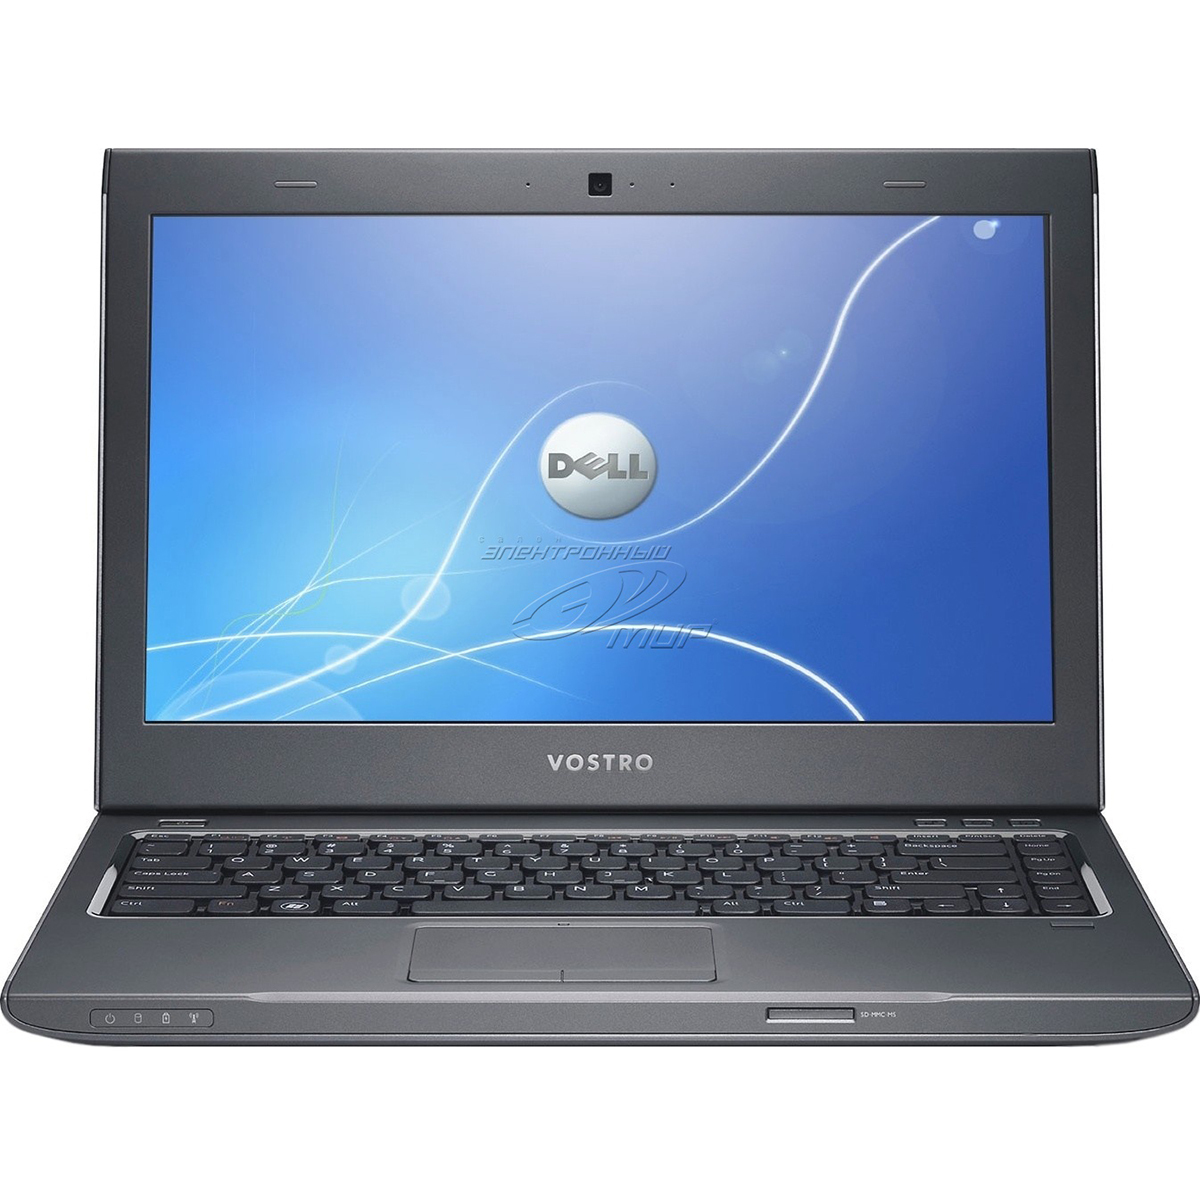 Laptop Dell Vostro 3446 (5J8DW1) - Intel Core i5-4210U, 4GB RAM, HDD 500GB, Nvidia GeForce GT 820M 2GB DDR3L, 14 inch